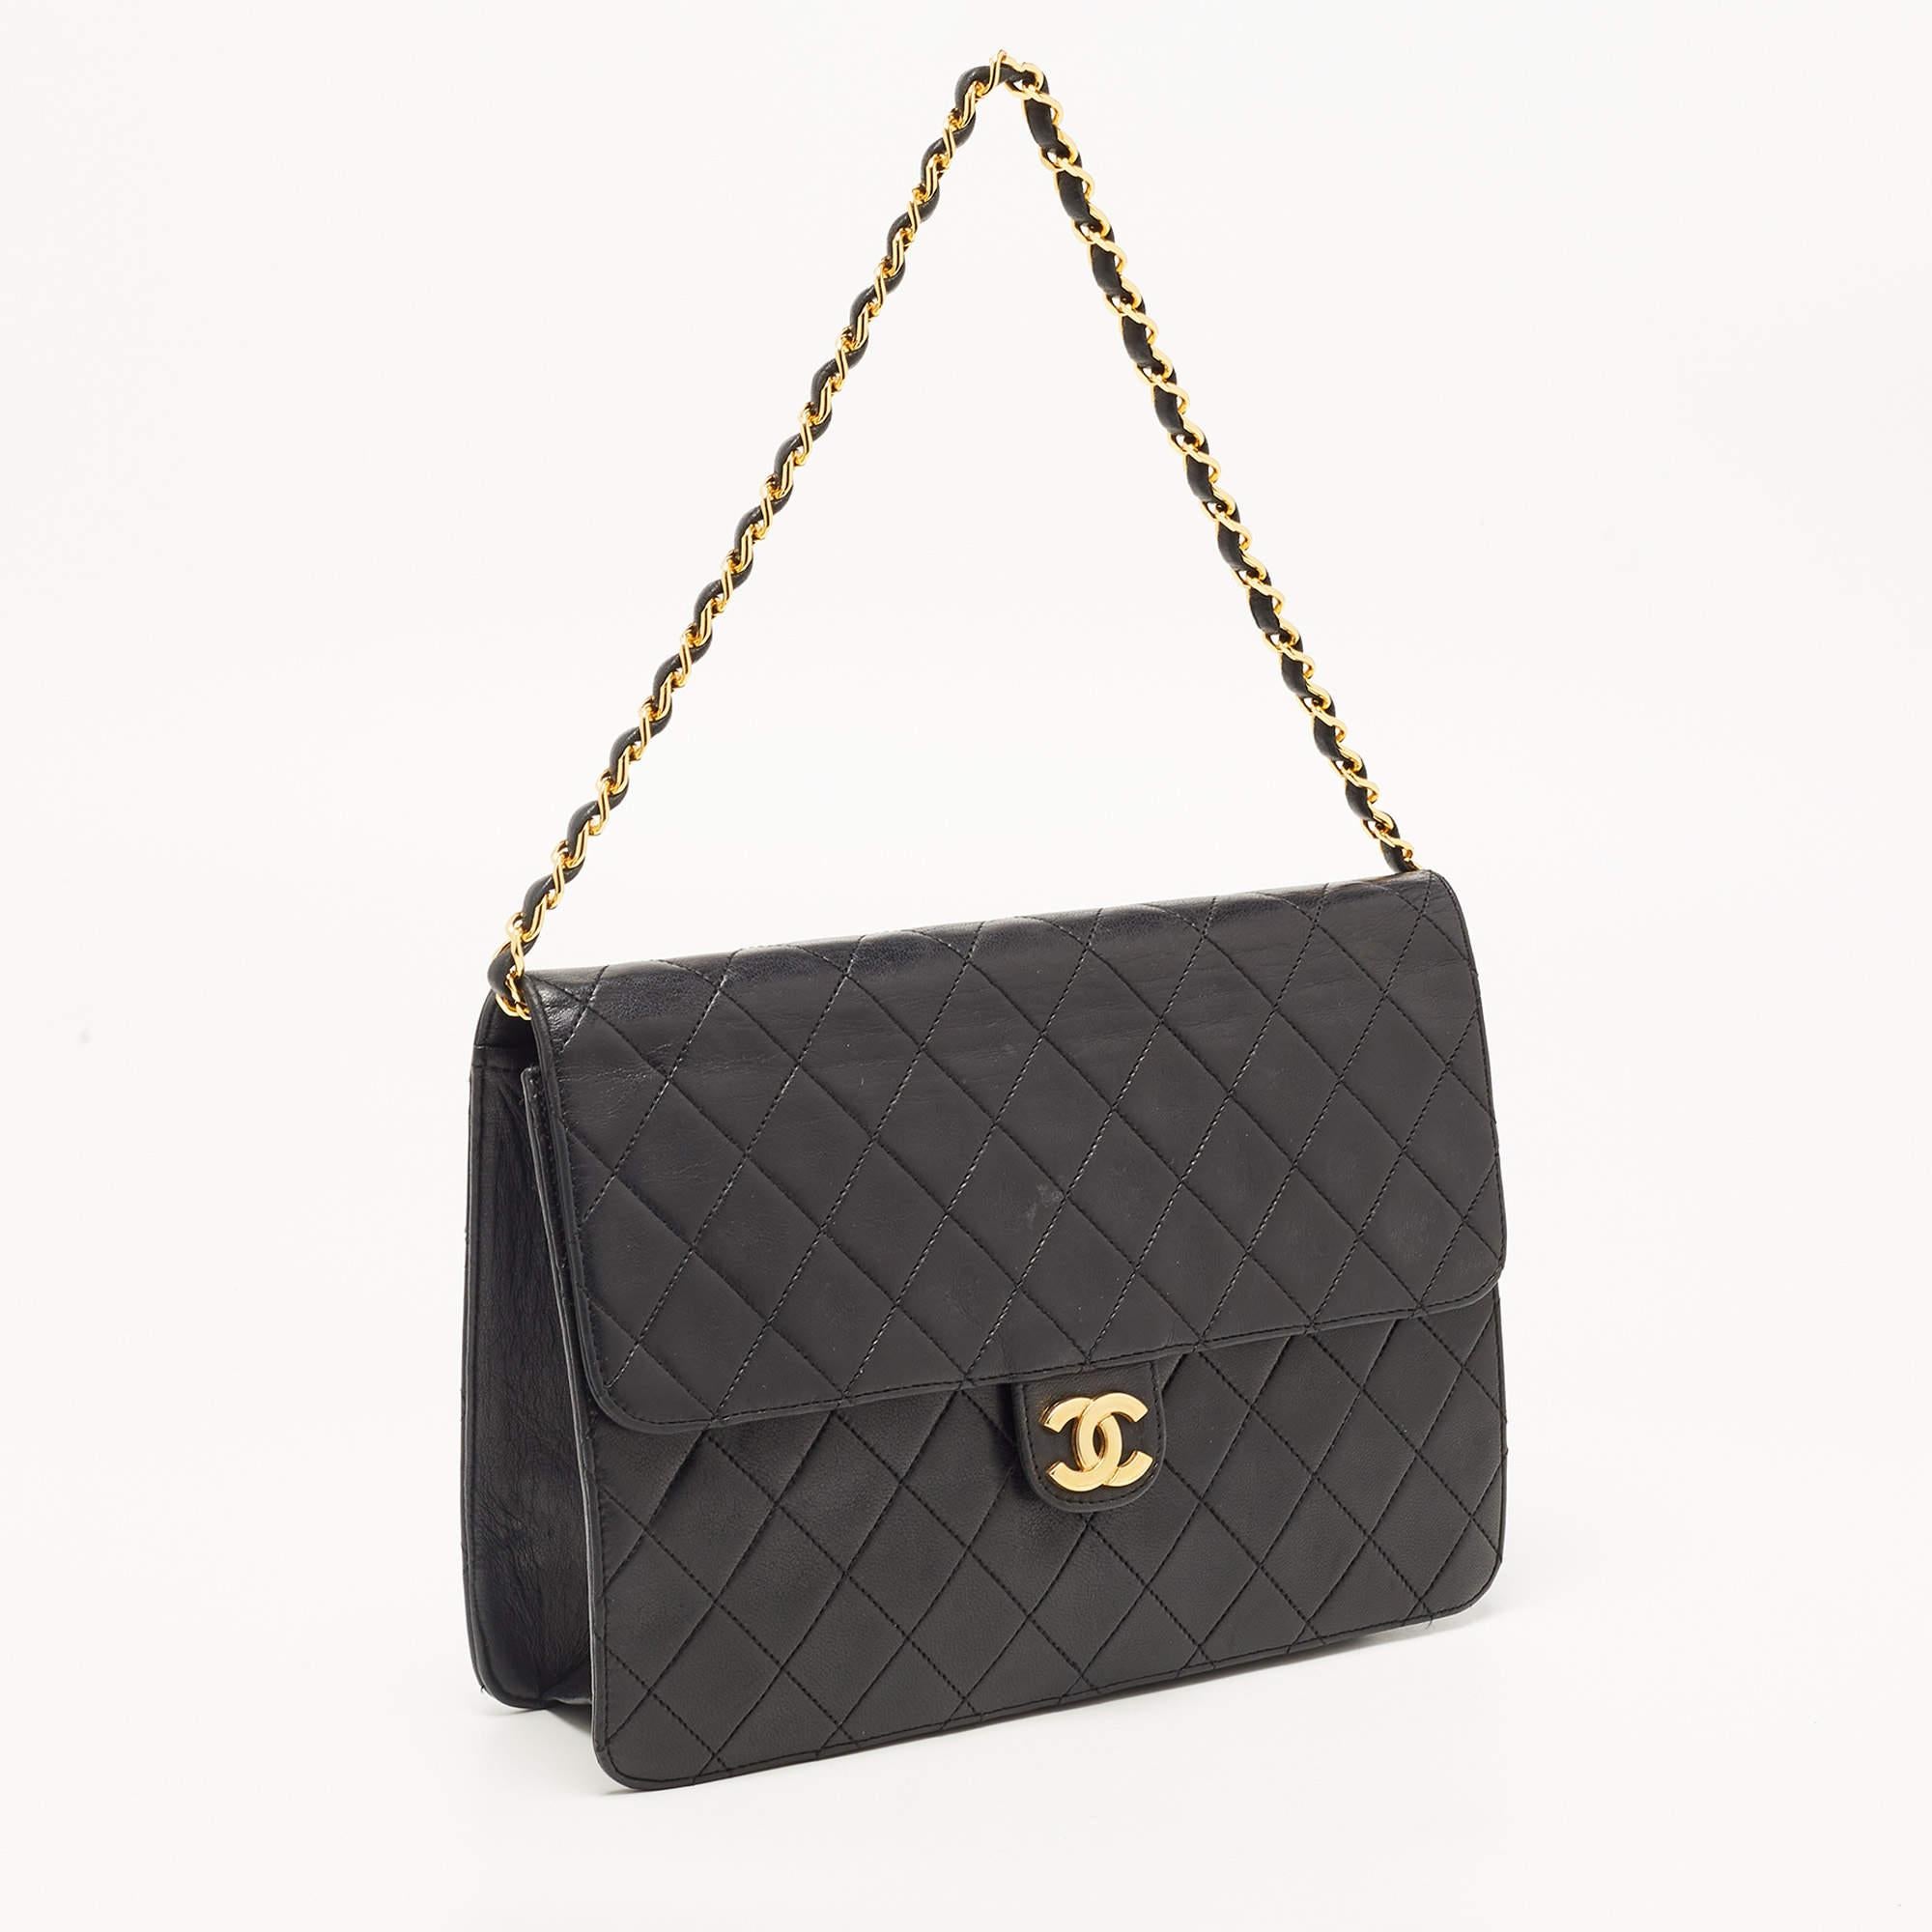 Chanel Black Leather Vintage CC Square Flap Shoulder Bag In Good Condition For Sale In Dubai, Al Qouz 2